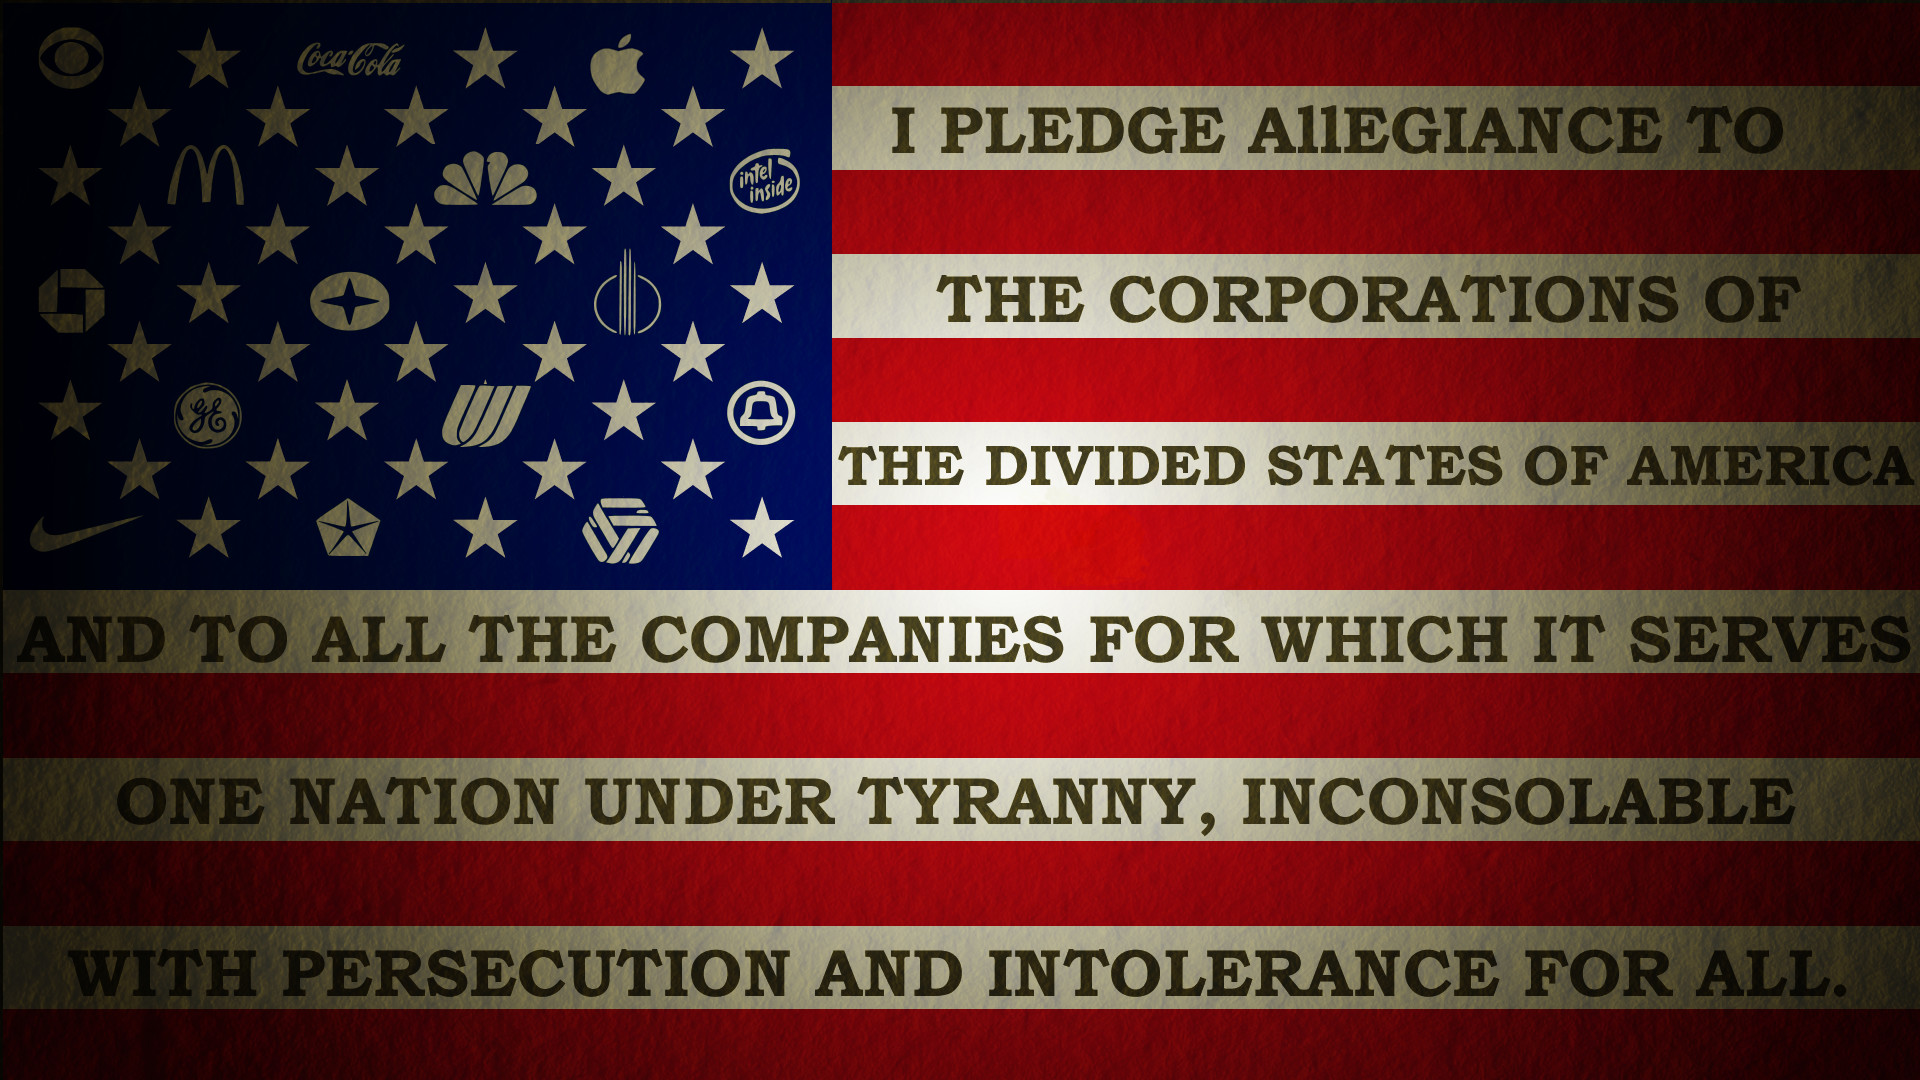 1920x1080 I pledge allegiance... image - Democrats, Liberals, and .